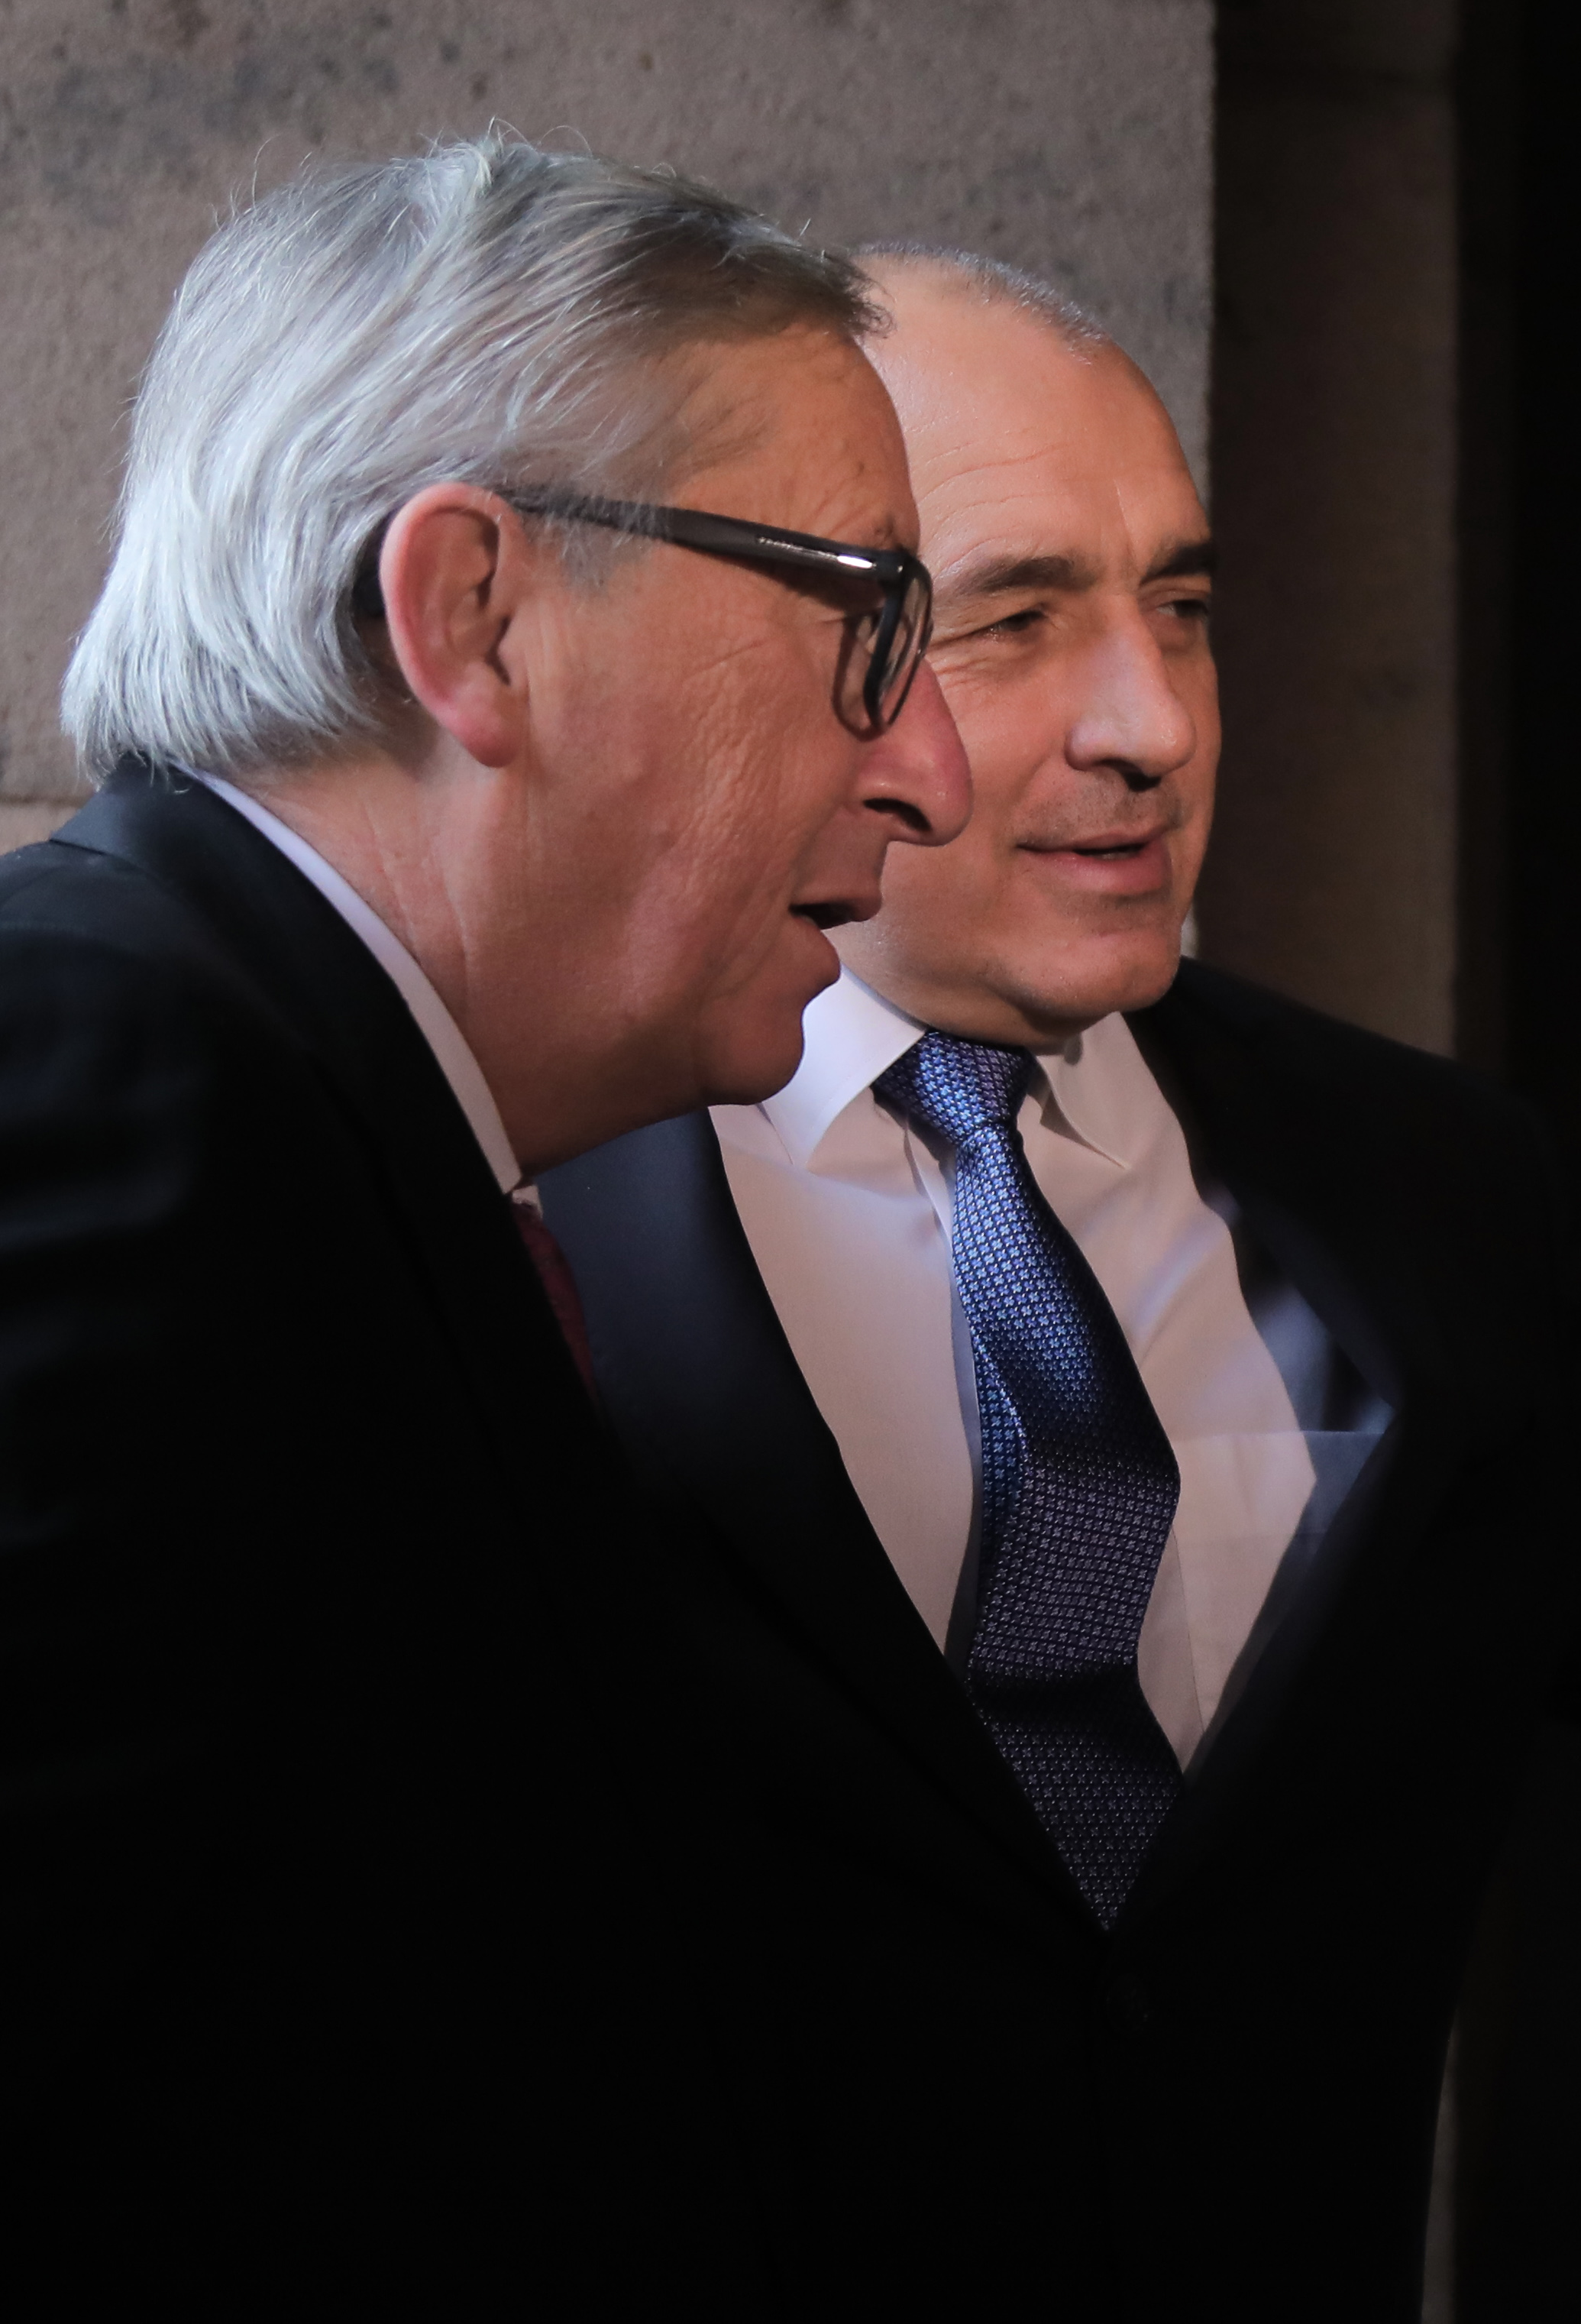 Премиерът Бойко Борисов се срещна с председателя на ЕК Жан-Клод Юнкер